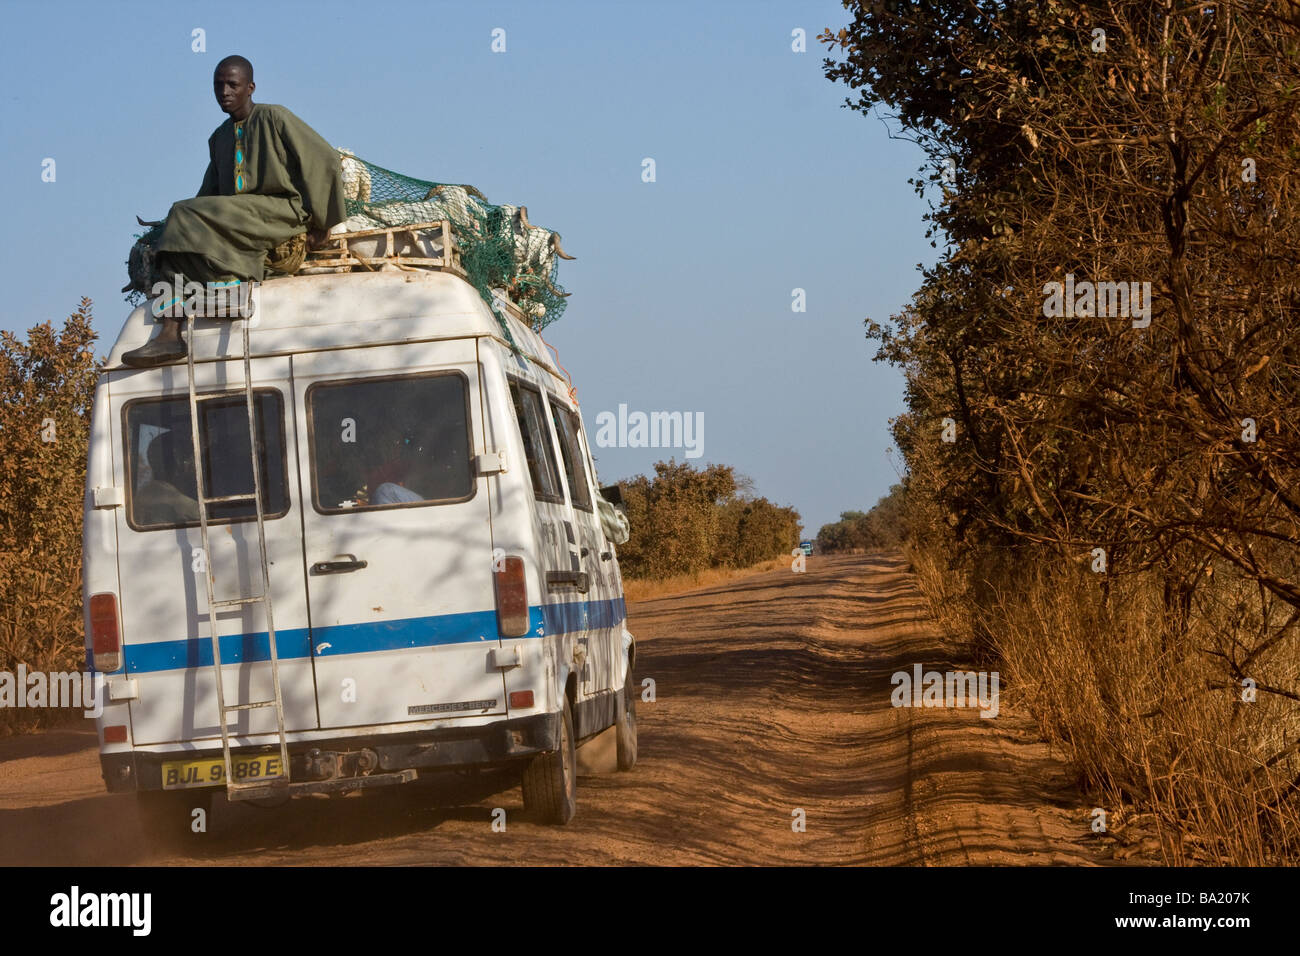 Moutons et bergers à cheval sur le dessus de minibus sur une route de terre au Mali l'Afrique de l'Ouest Banque D'Images